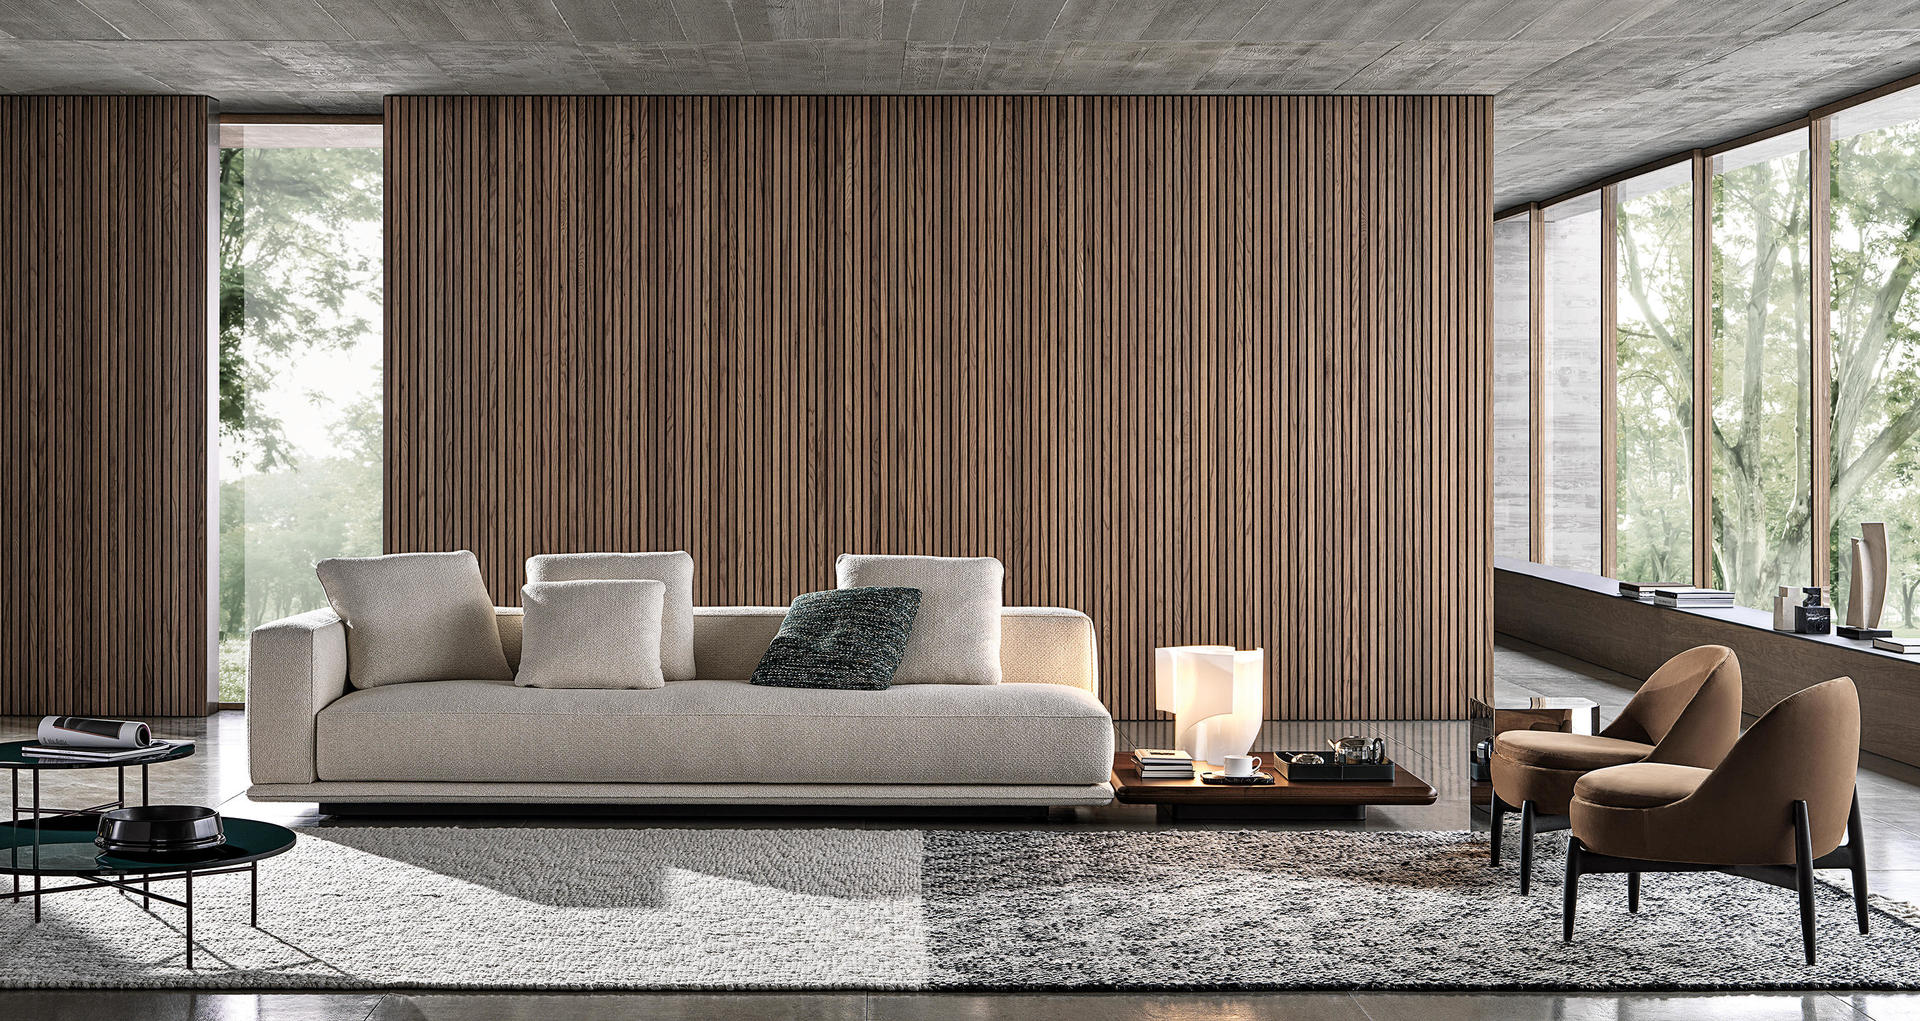 HORA Barneveld Minotti Horizonte bank modulaire sofa design meubelen designmeubelen 9.jpg